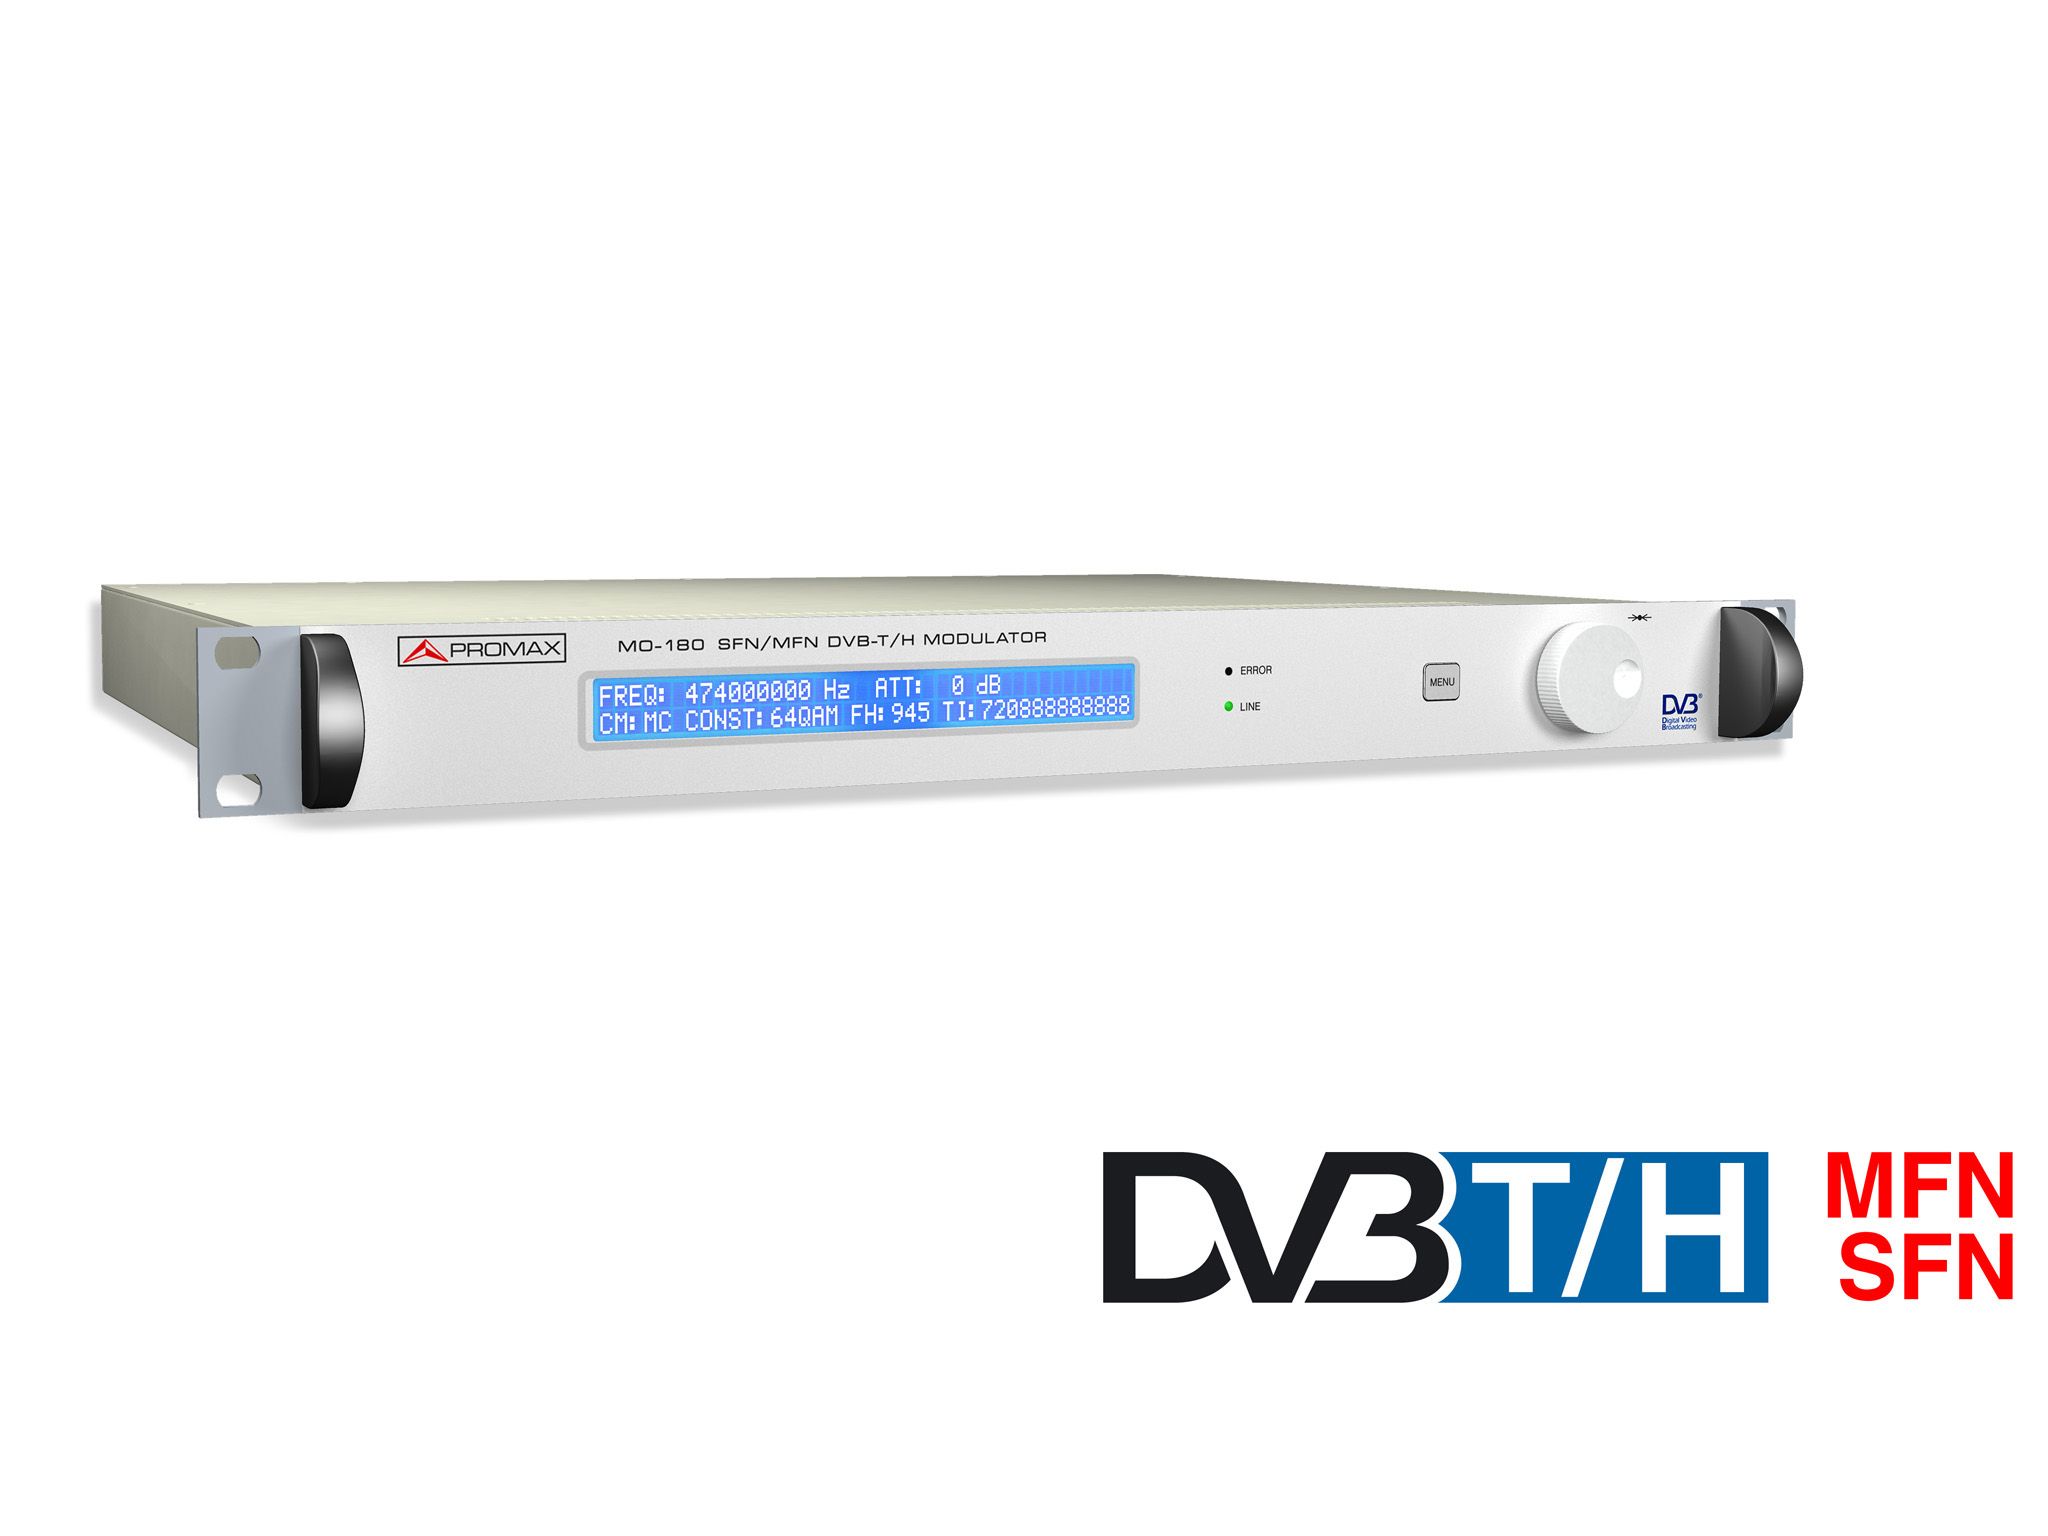 MO-180: DVB-T and DVB-H modulator